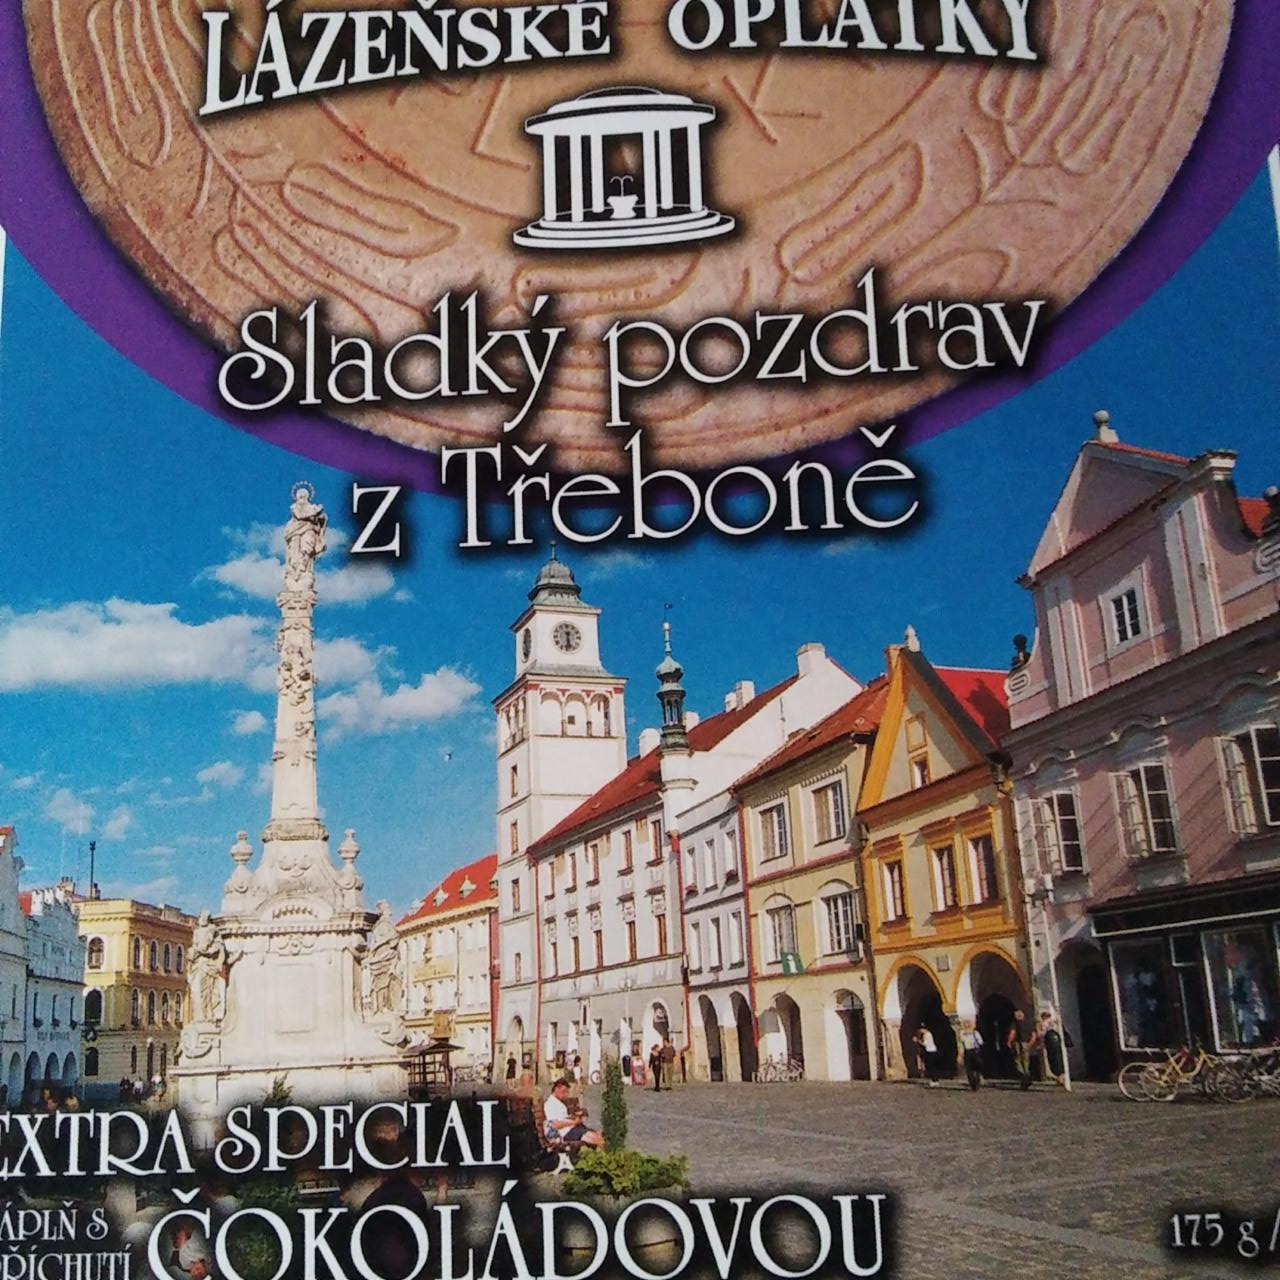 Fotografie - Lázeňské oplatky extra special čokoláda